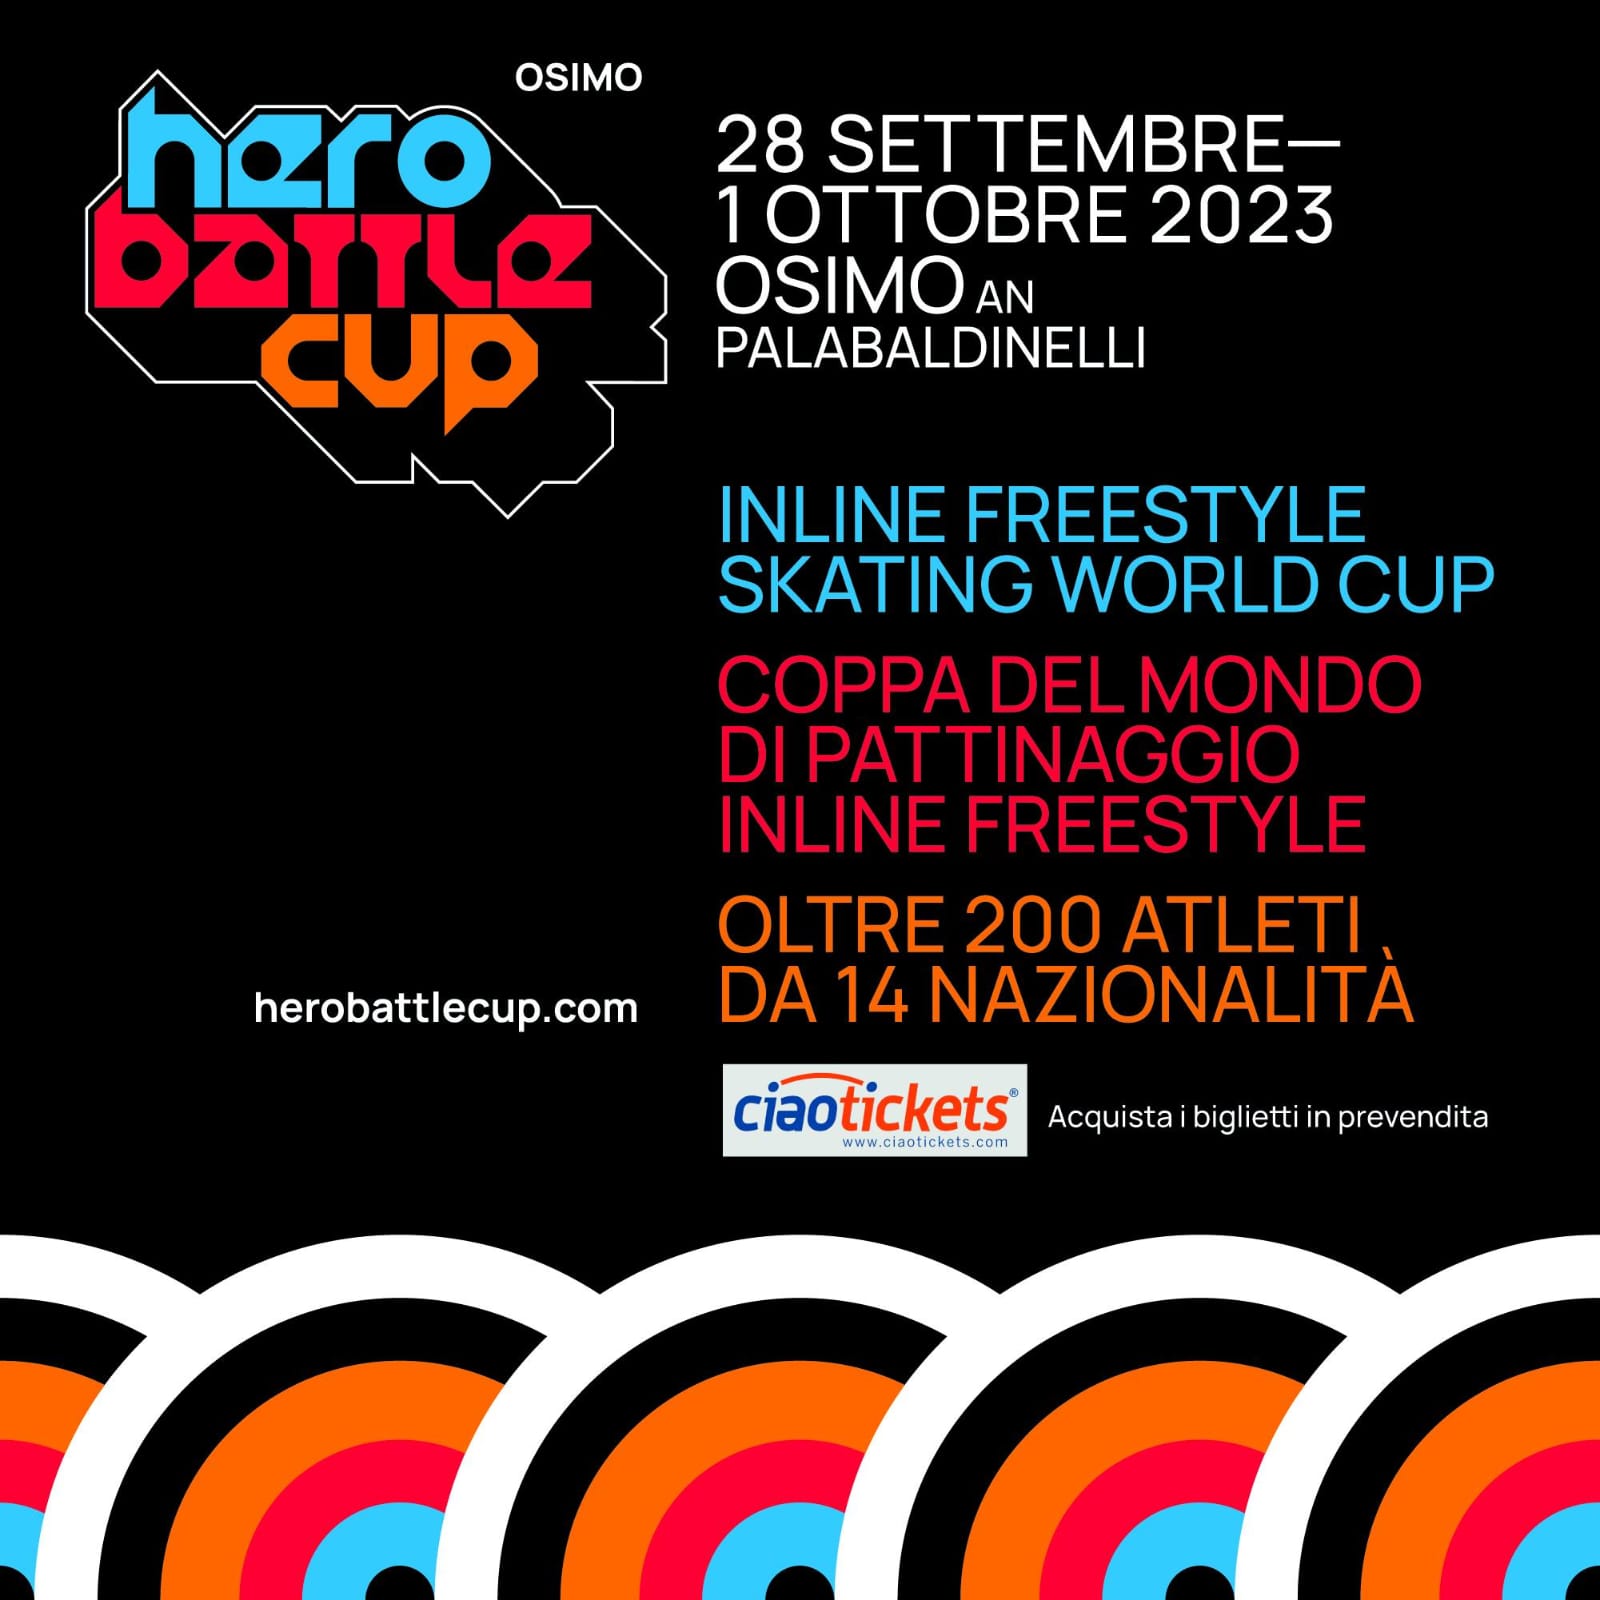 HERO BATTLE CUP – En Osimo, la final del campeonato mundial con atletas de todo el mundo.